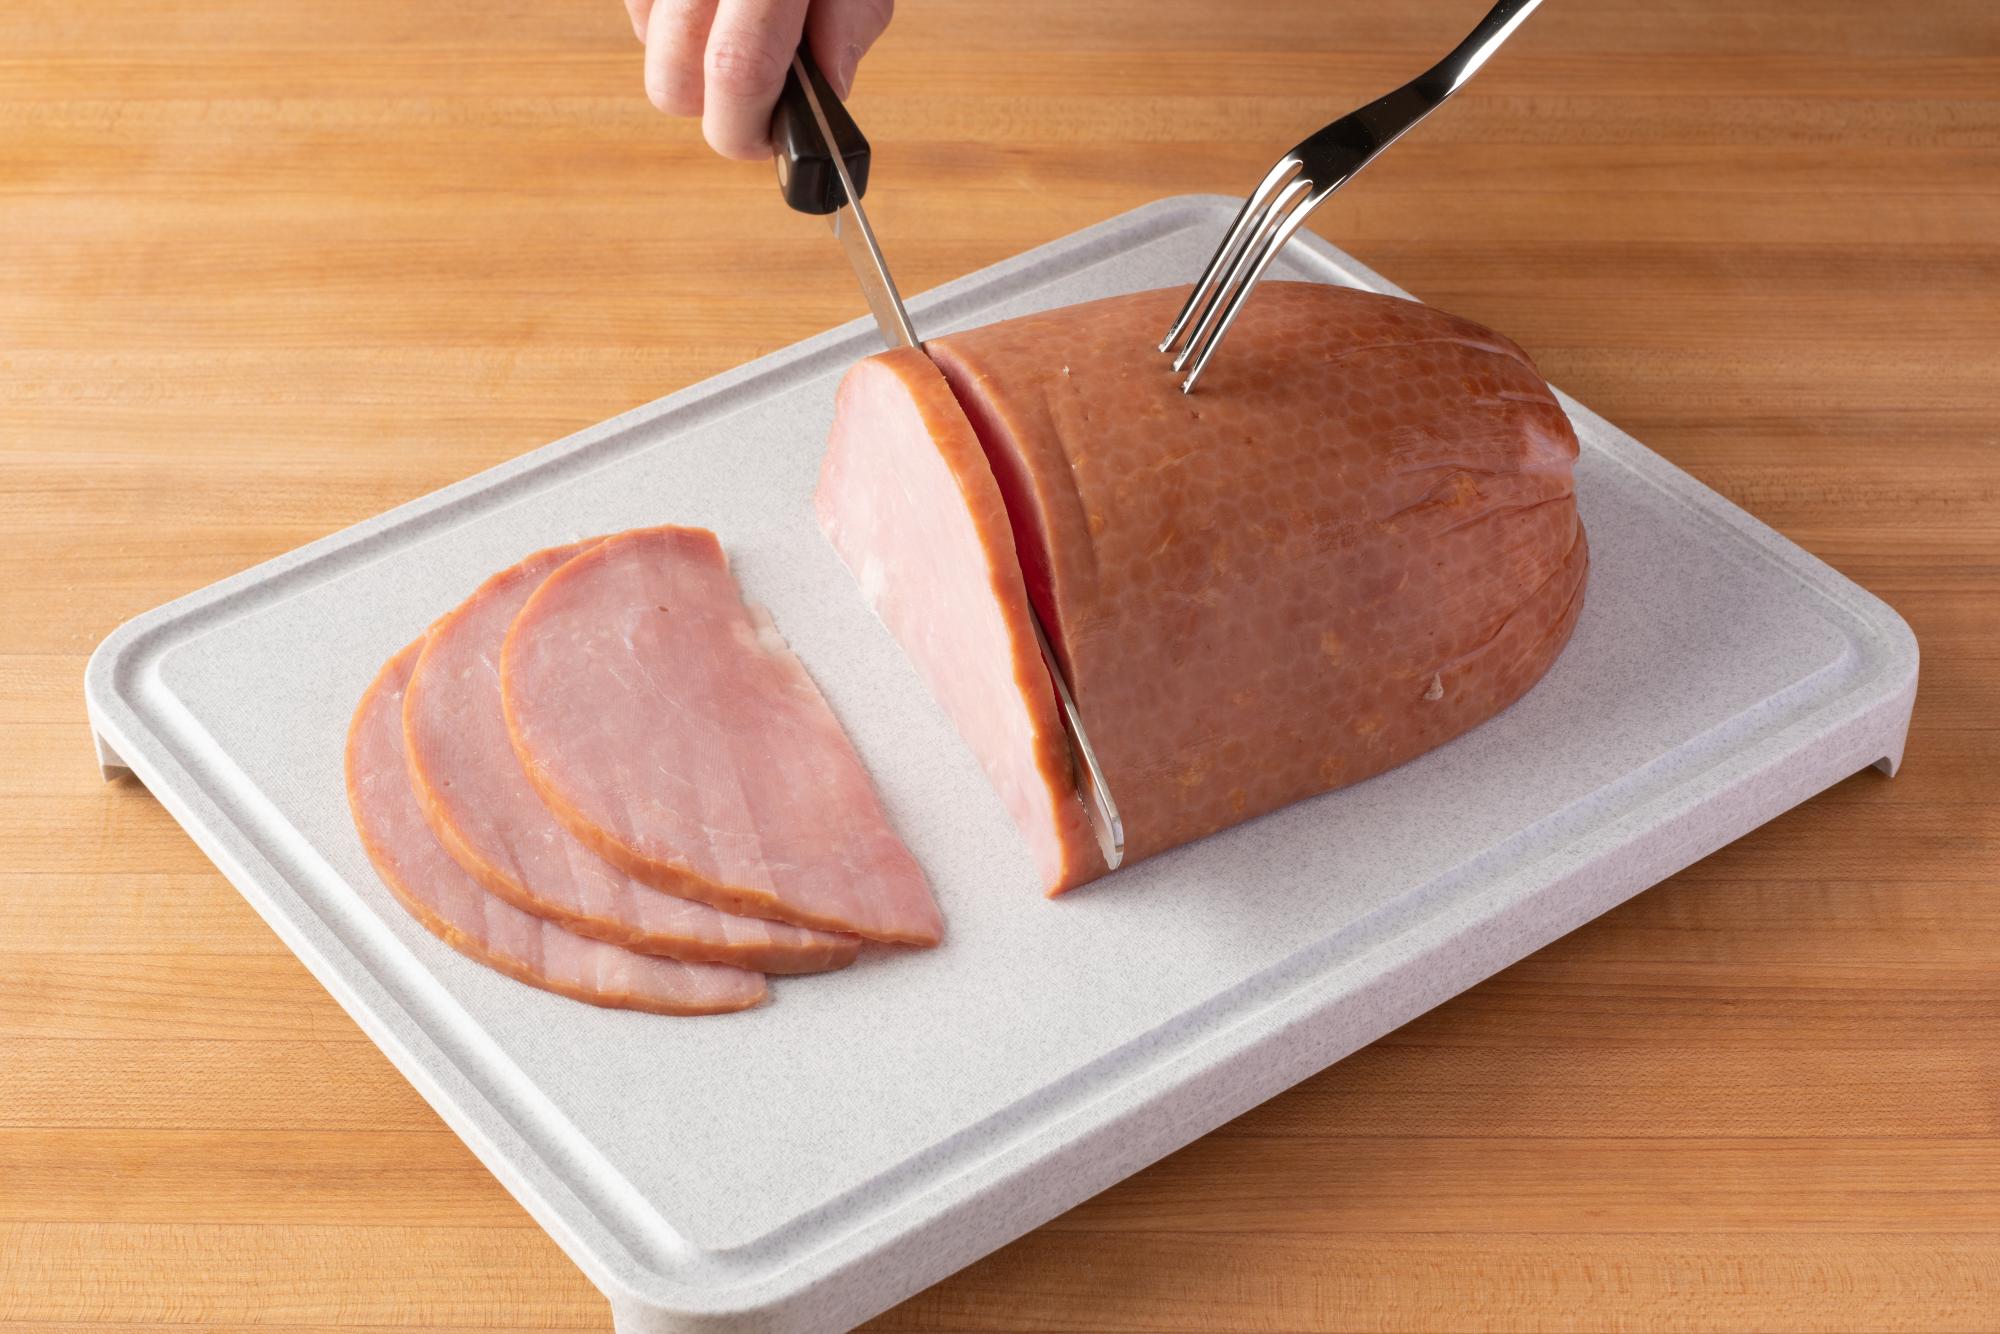 Using a Petite Slicer to slice a Ham.